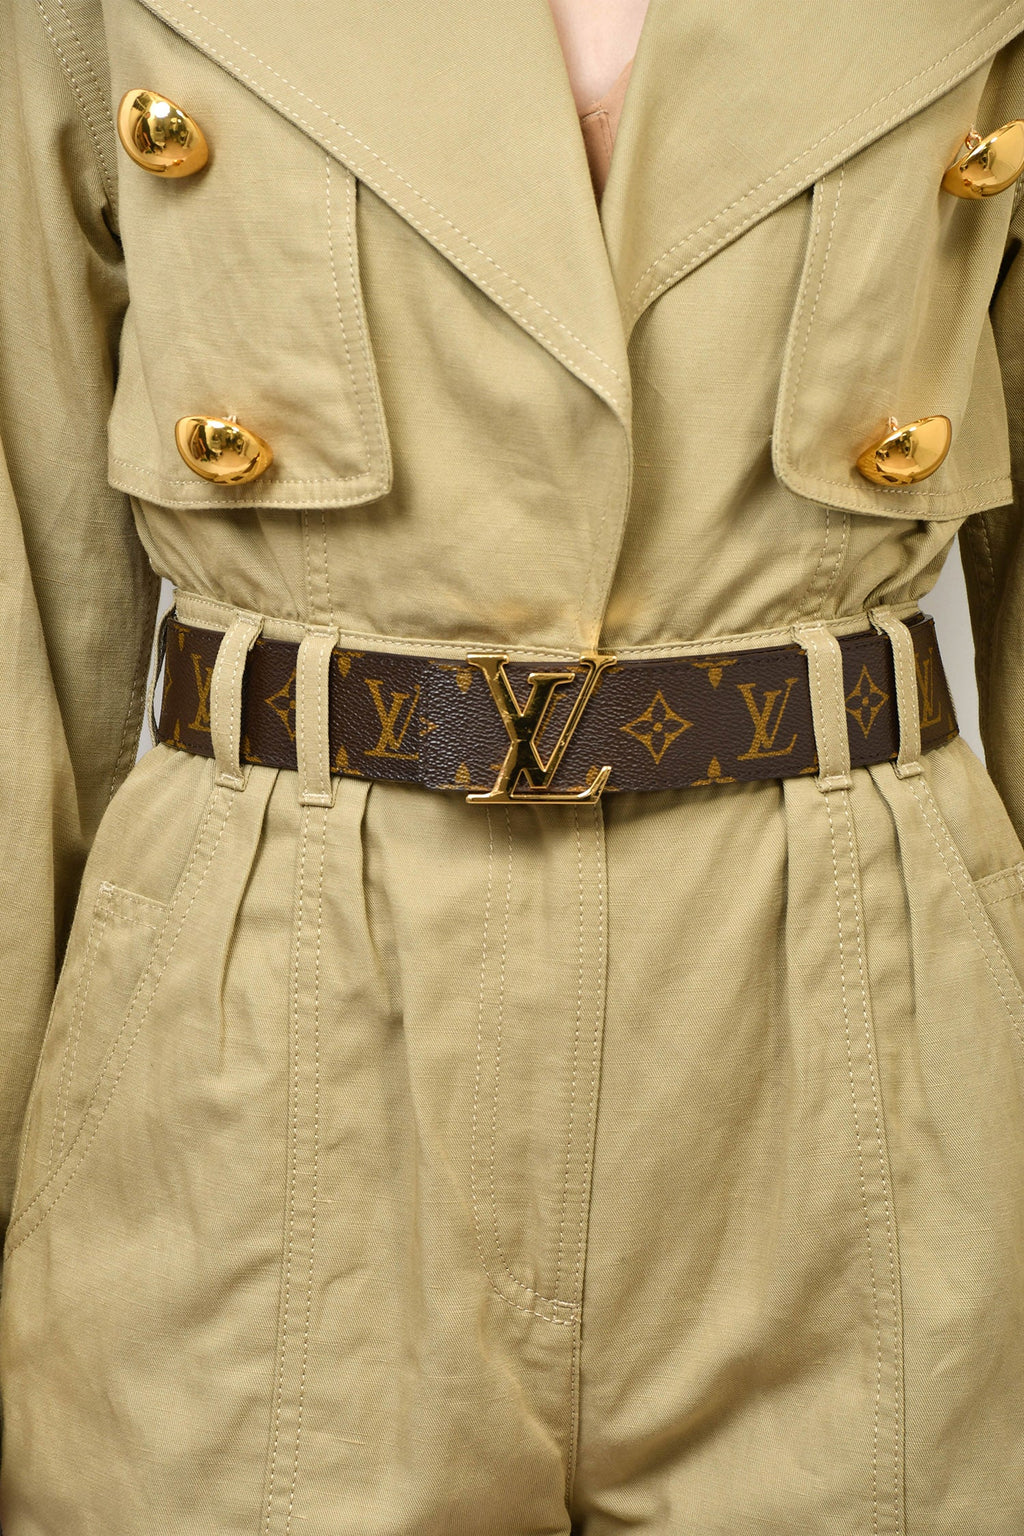 Louis Vuitton Vintage Monogram Belt Pull Buckle (Size 80/32)